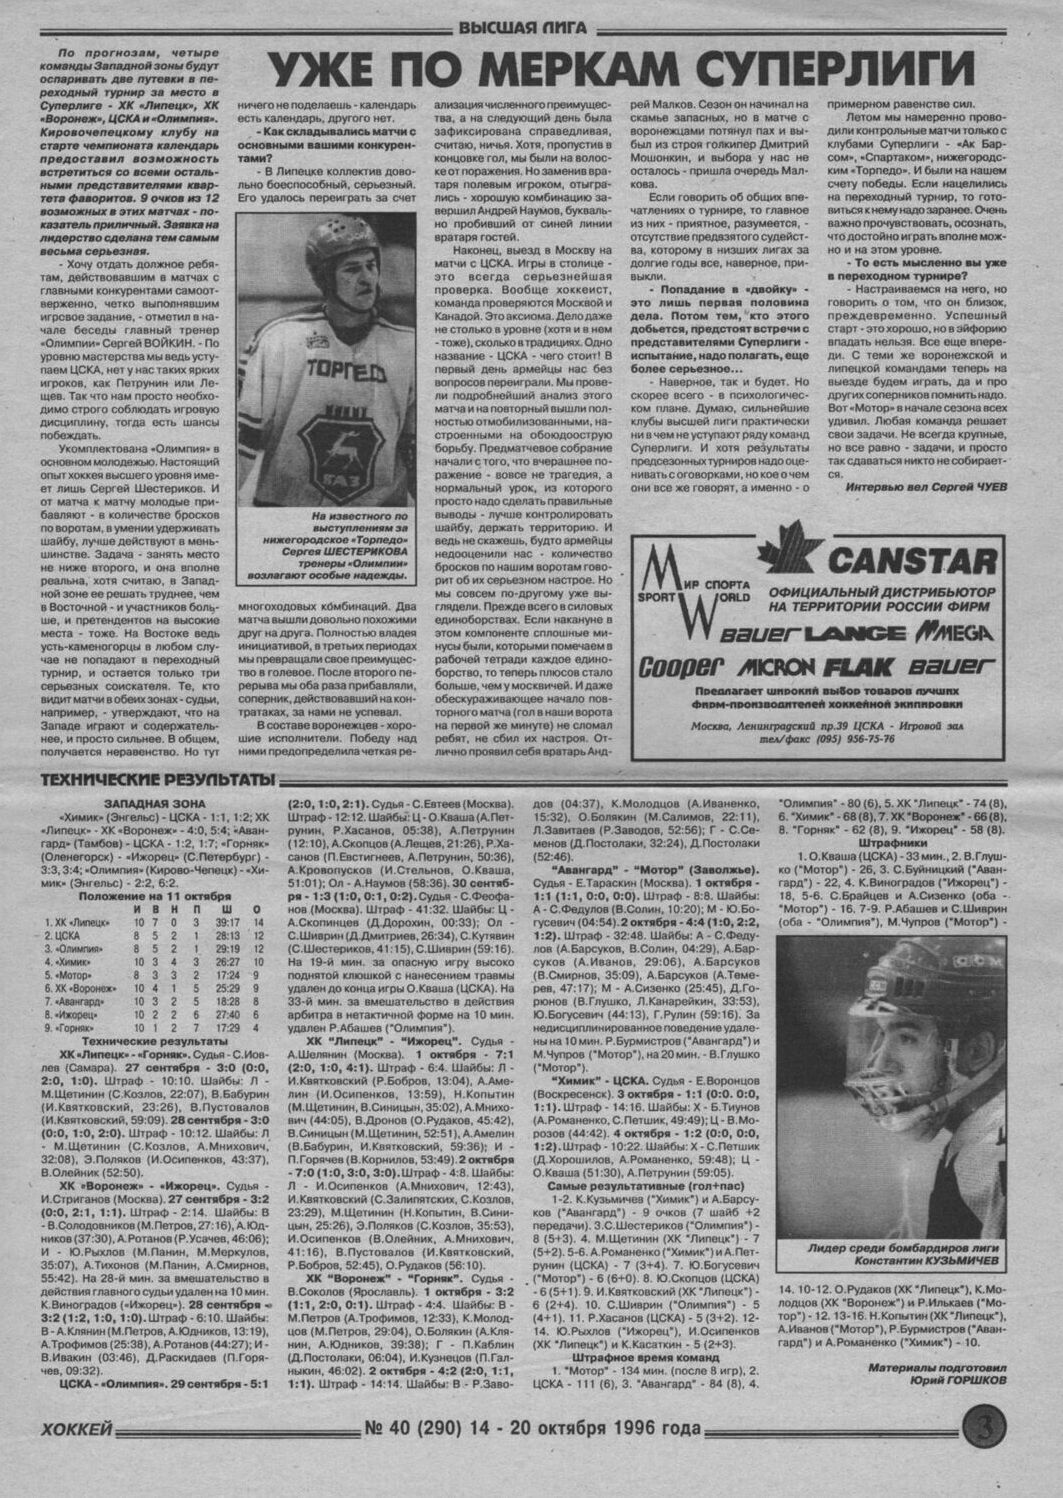 Еженедельник "Хоккей" от 1996-97гг.